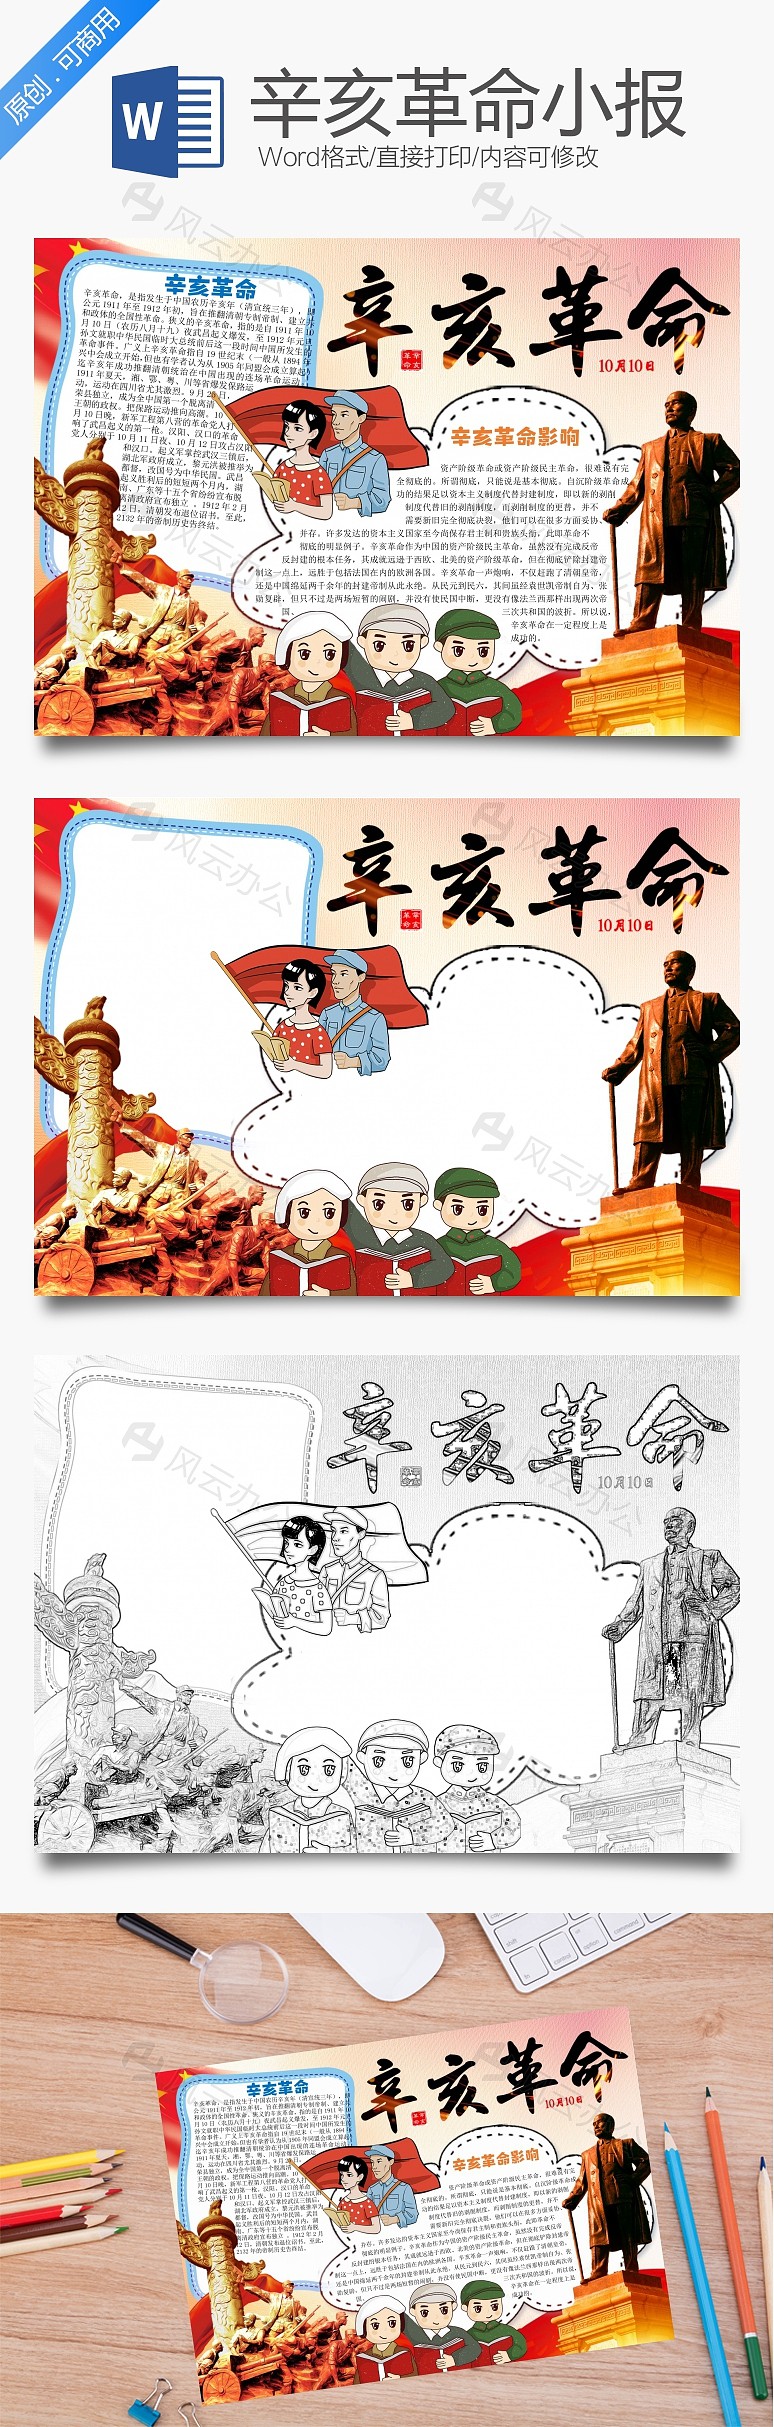 卡通辛亥革命word小报手抄报模板